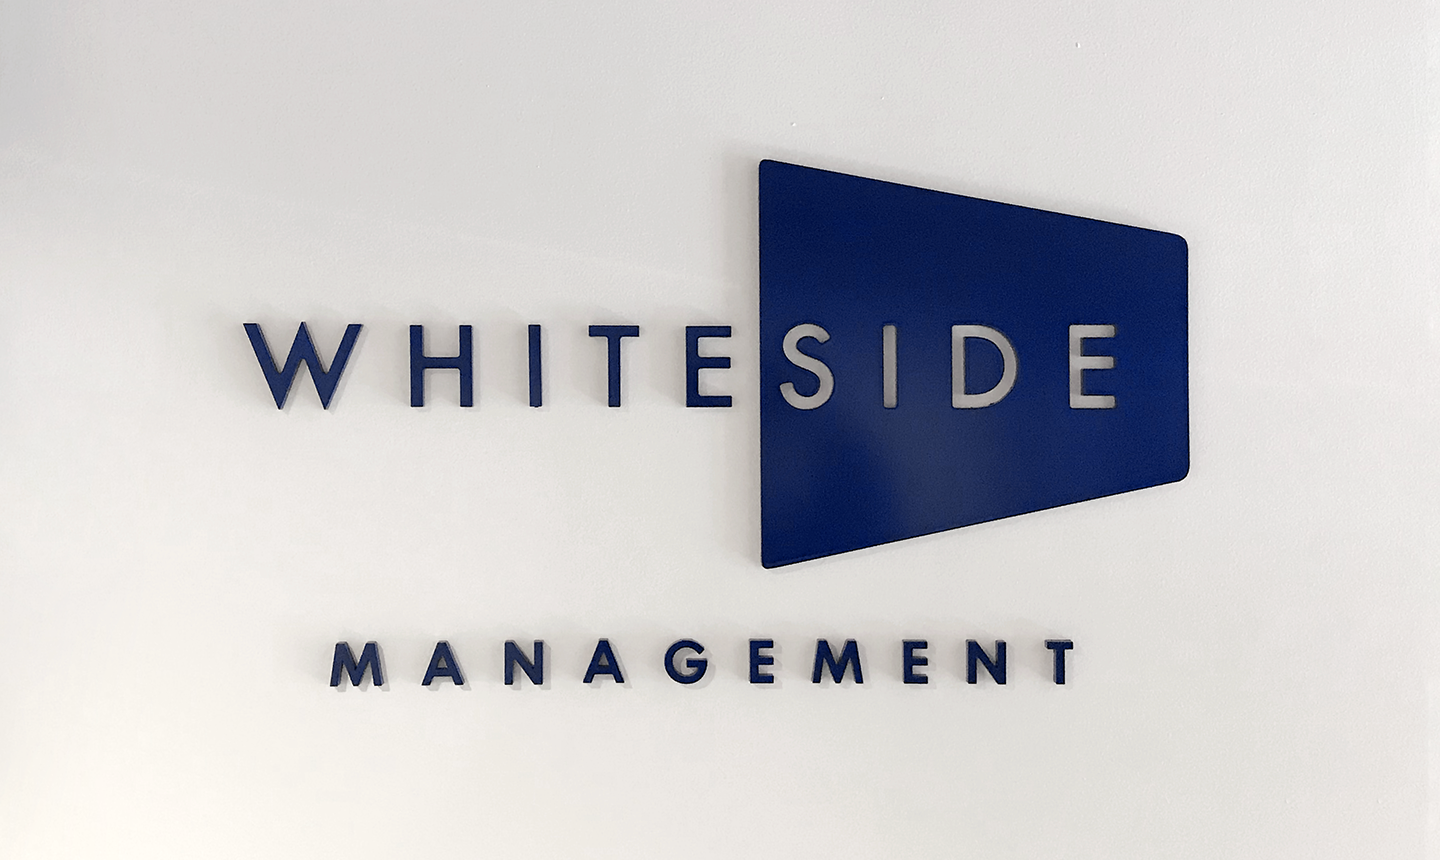 Whiteside 3 Dimensional Signage